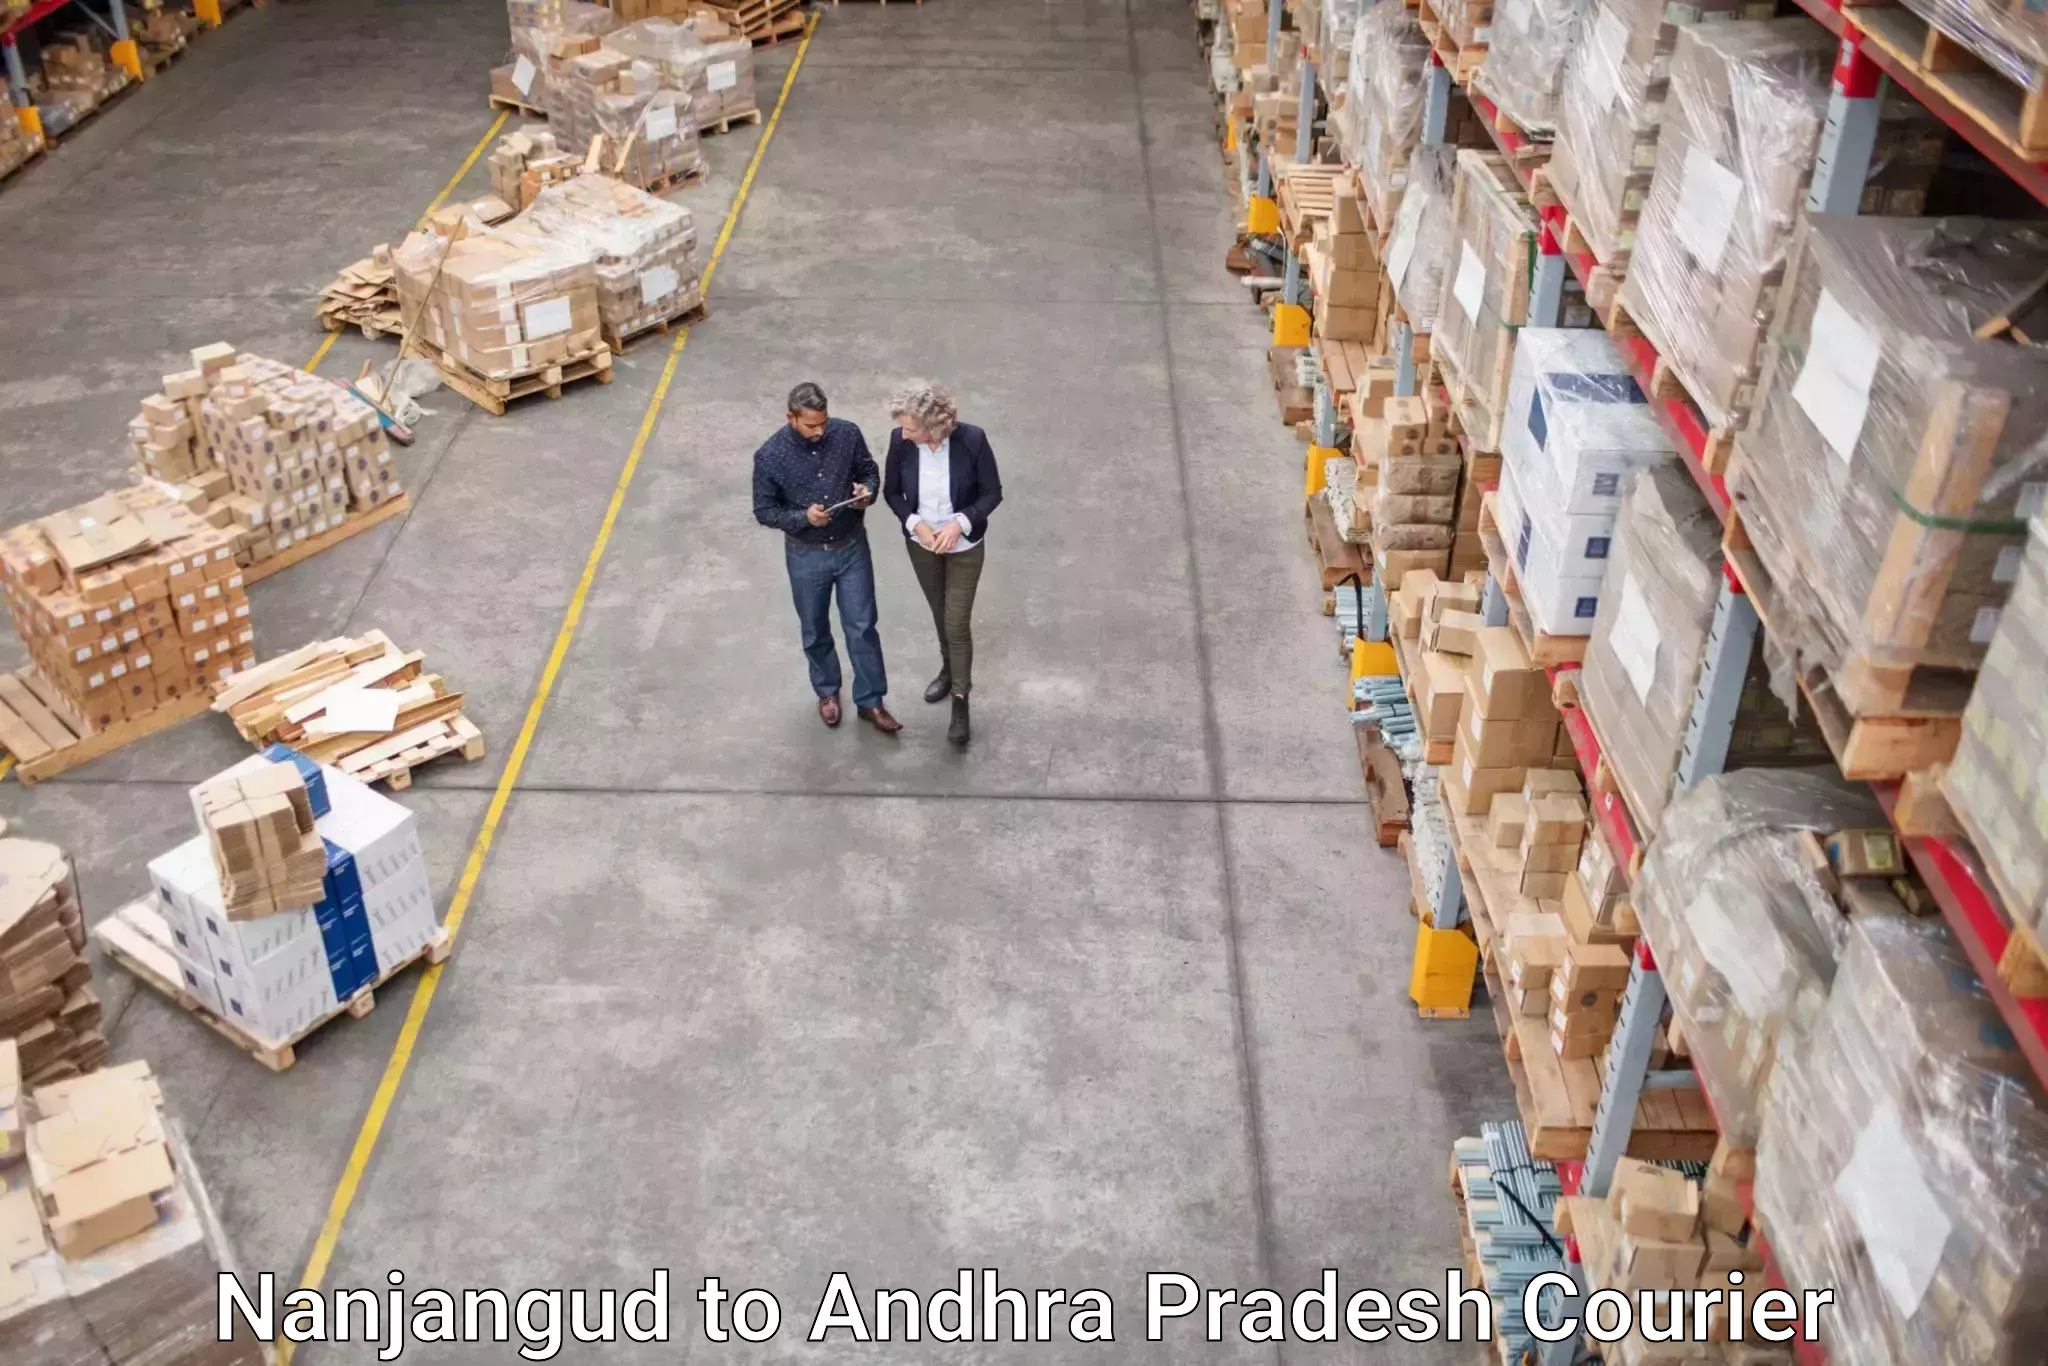 High-capacity parcel service Nanjangud to Annavaram